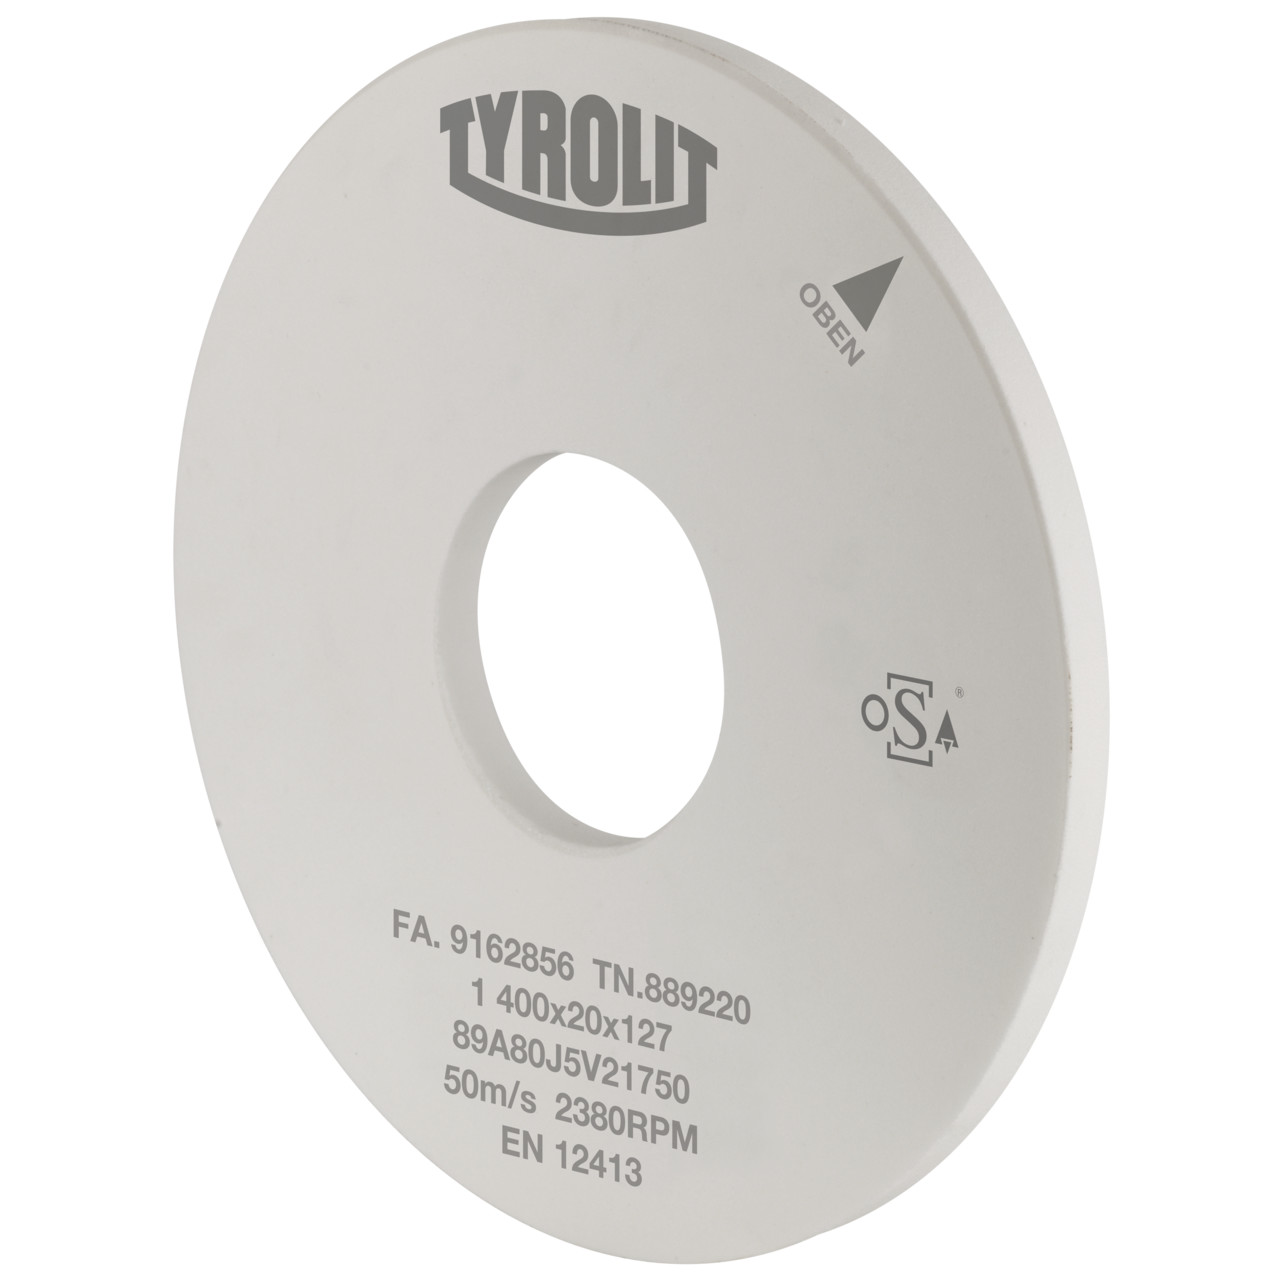 Tyrolit Rettifica cilindrica esterna Ceramica convenzionale DxDxH 400x30x127 Per acciai non legati e basso legati, forma: 1, Art. 39869